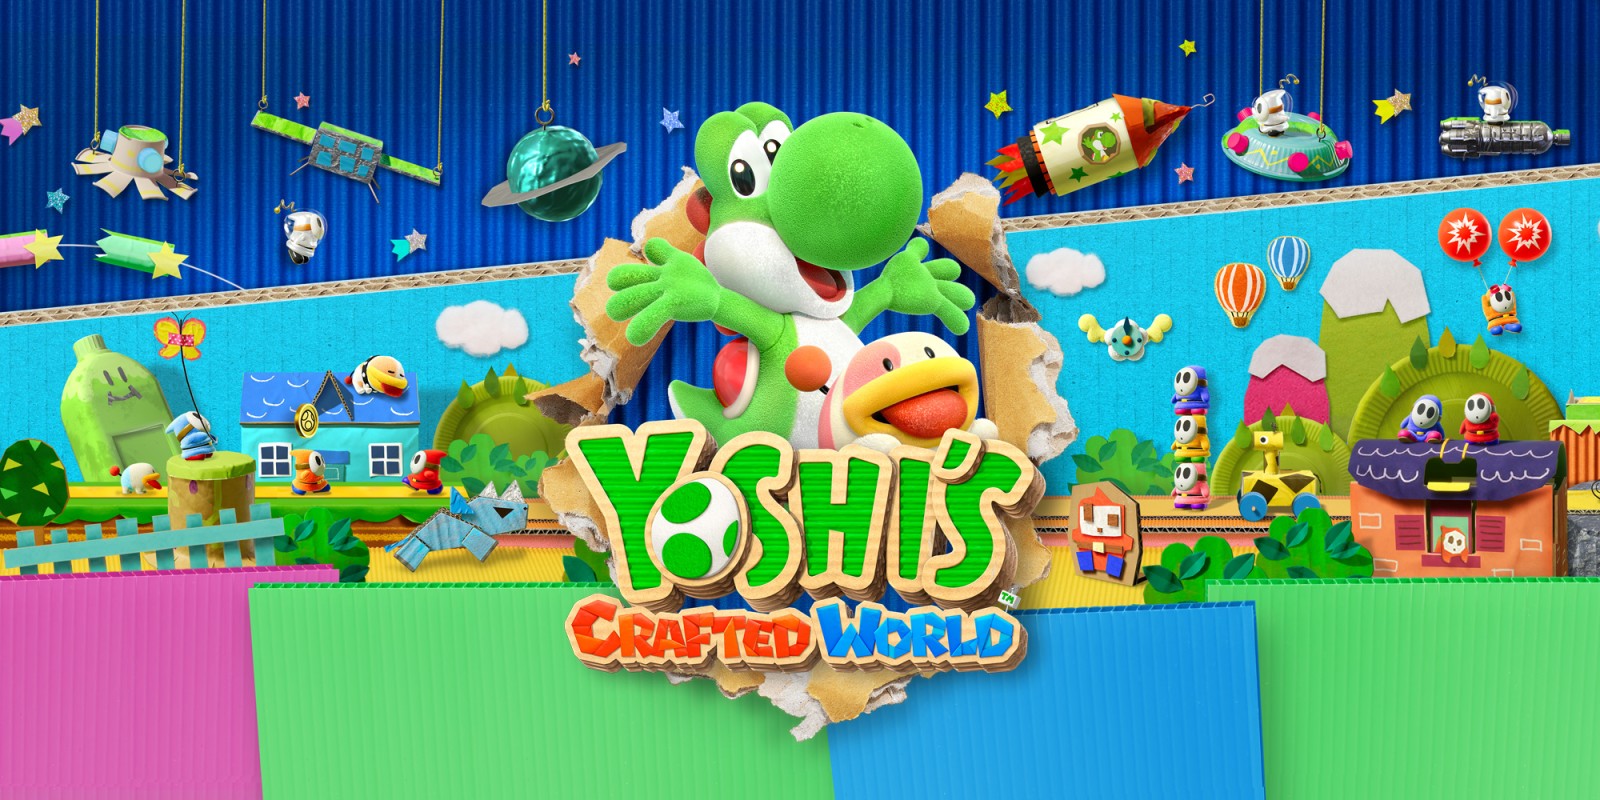 Yoshis Crafted World топ игры сега онлайн и денди играть бесплатно смотреть все скачать